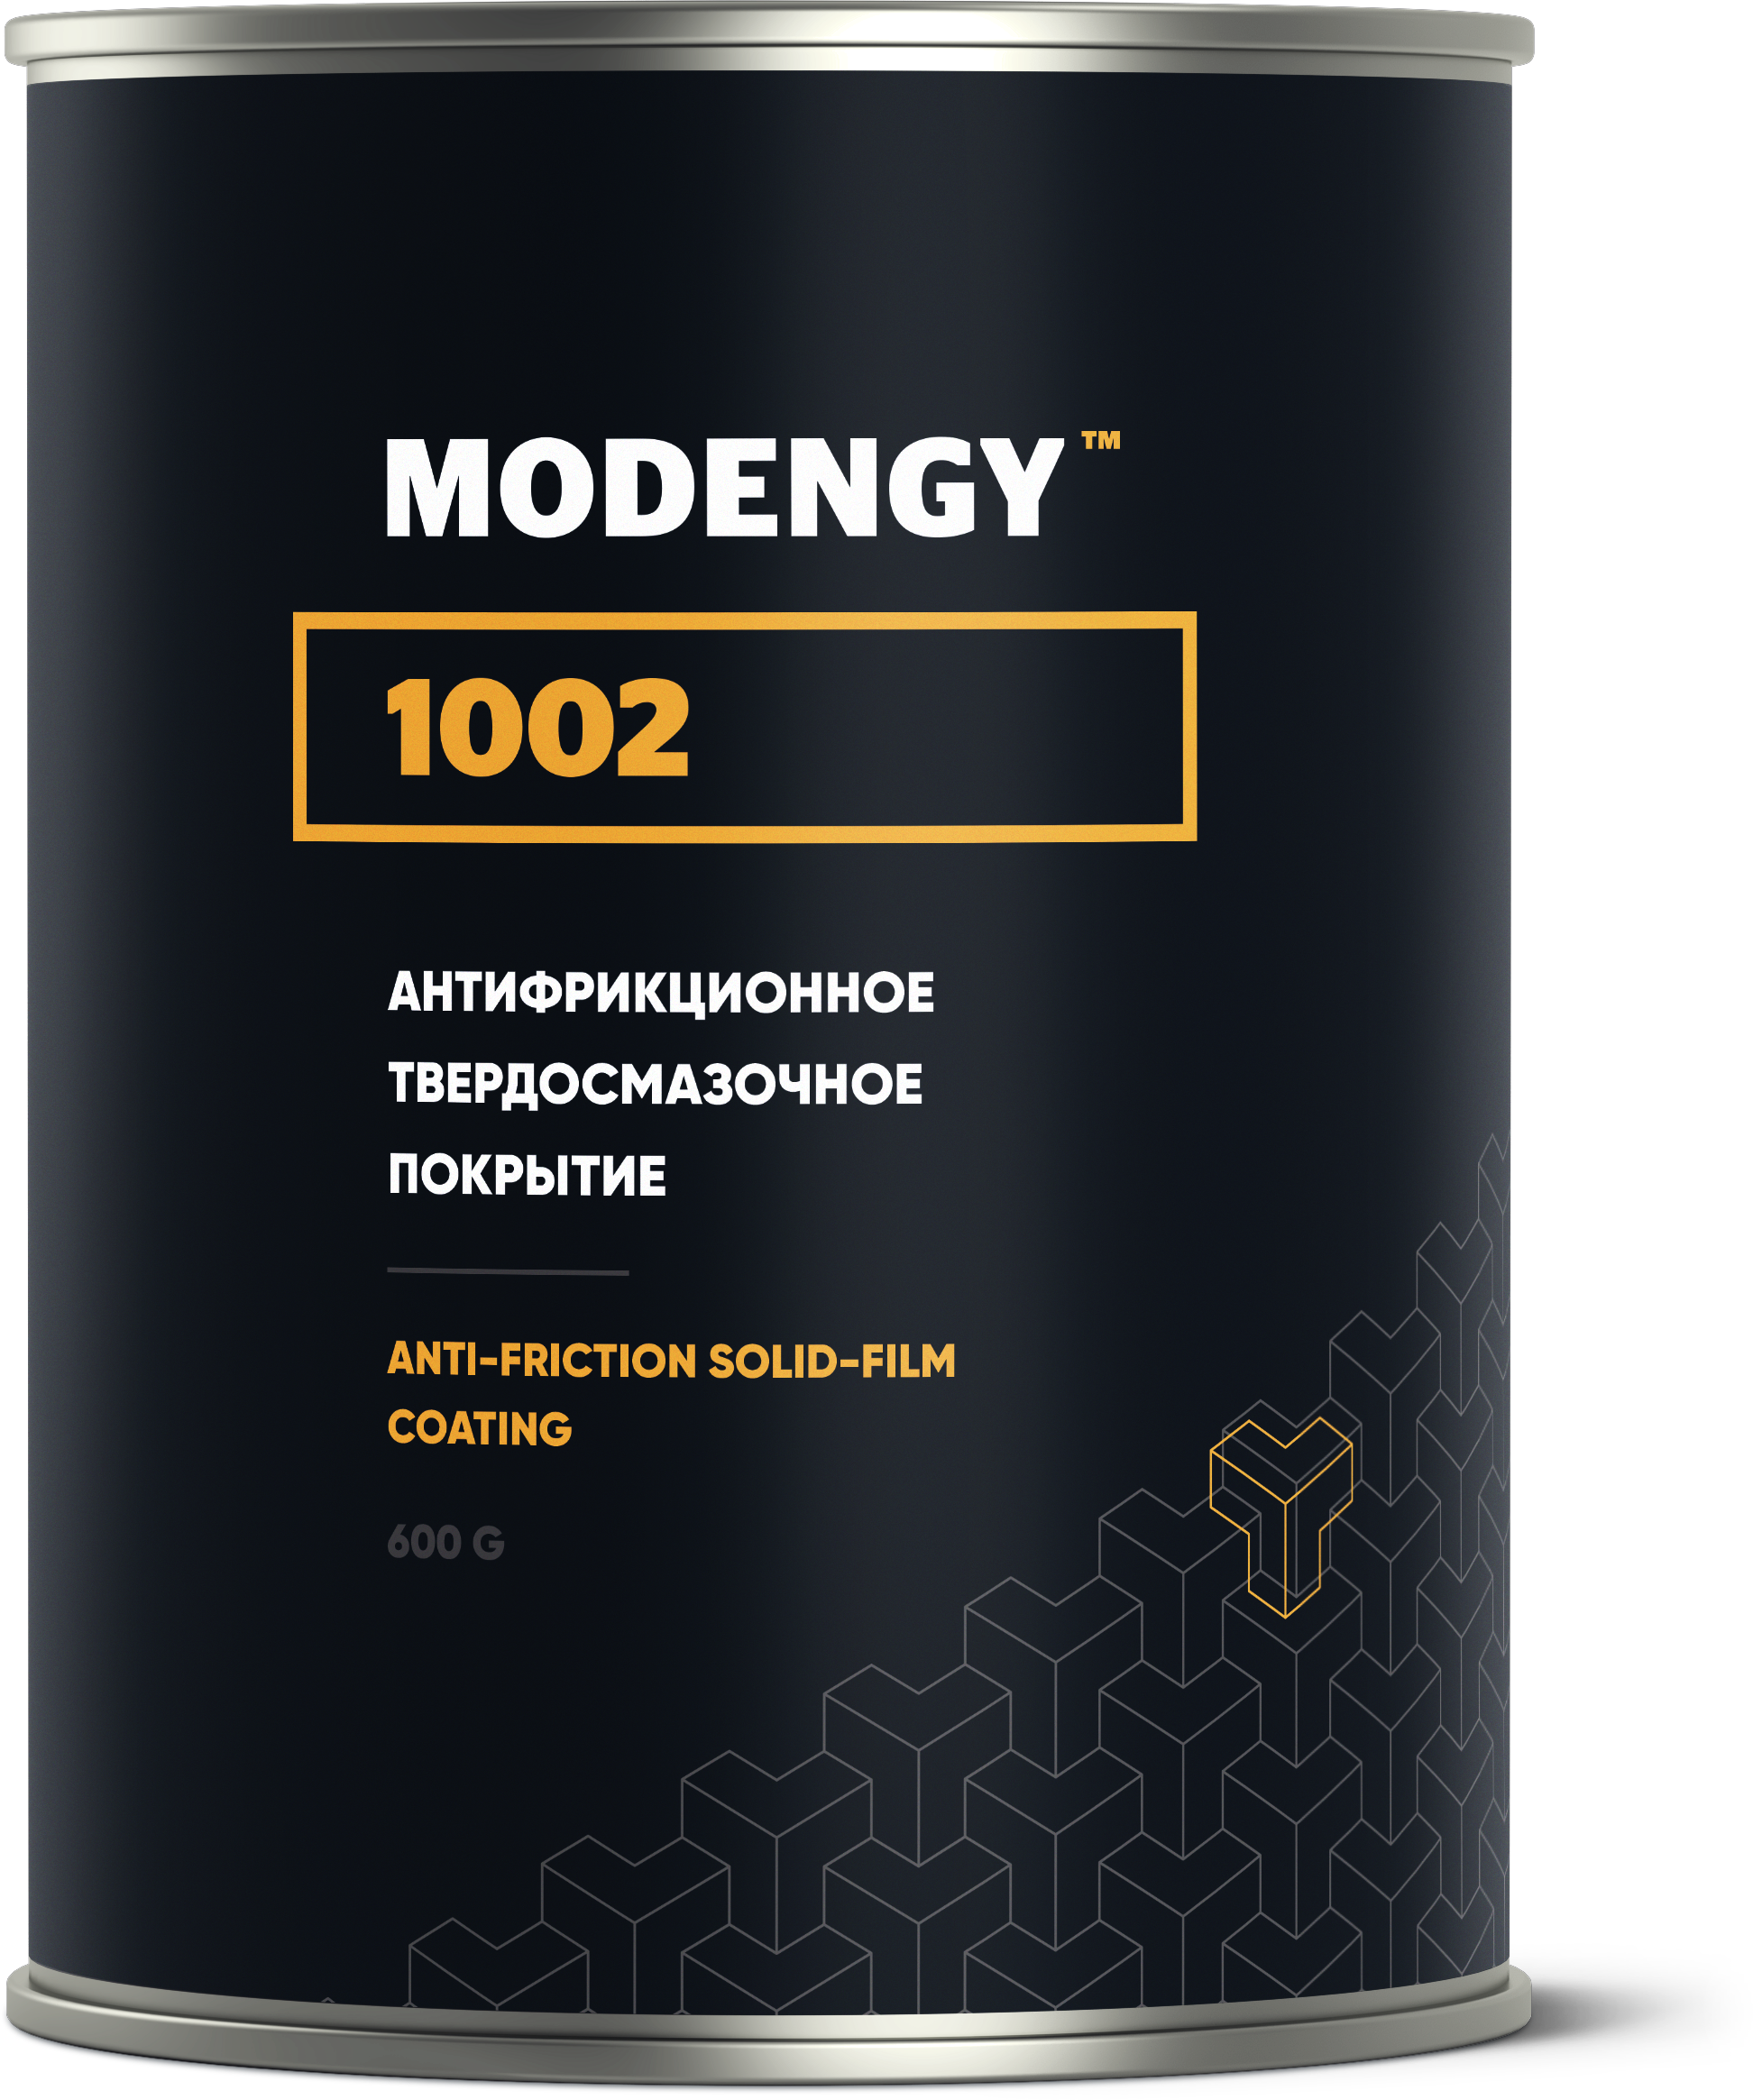 Антифрикционное твердосмазочное покрытие MODENGY 1002 (600 г)